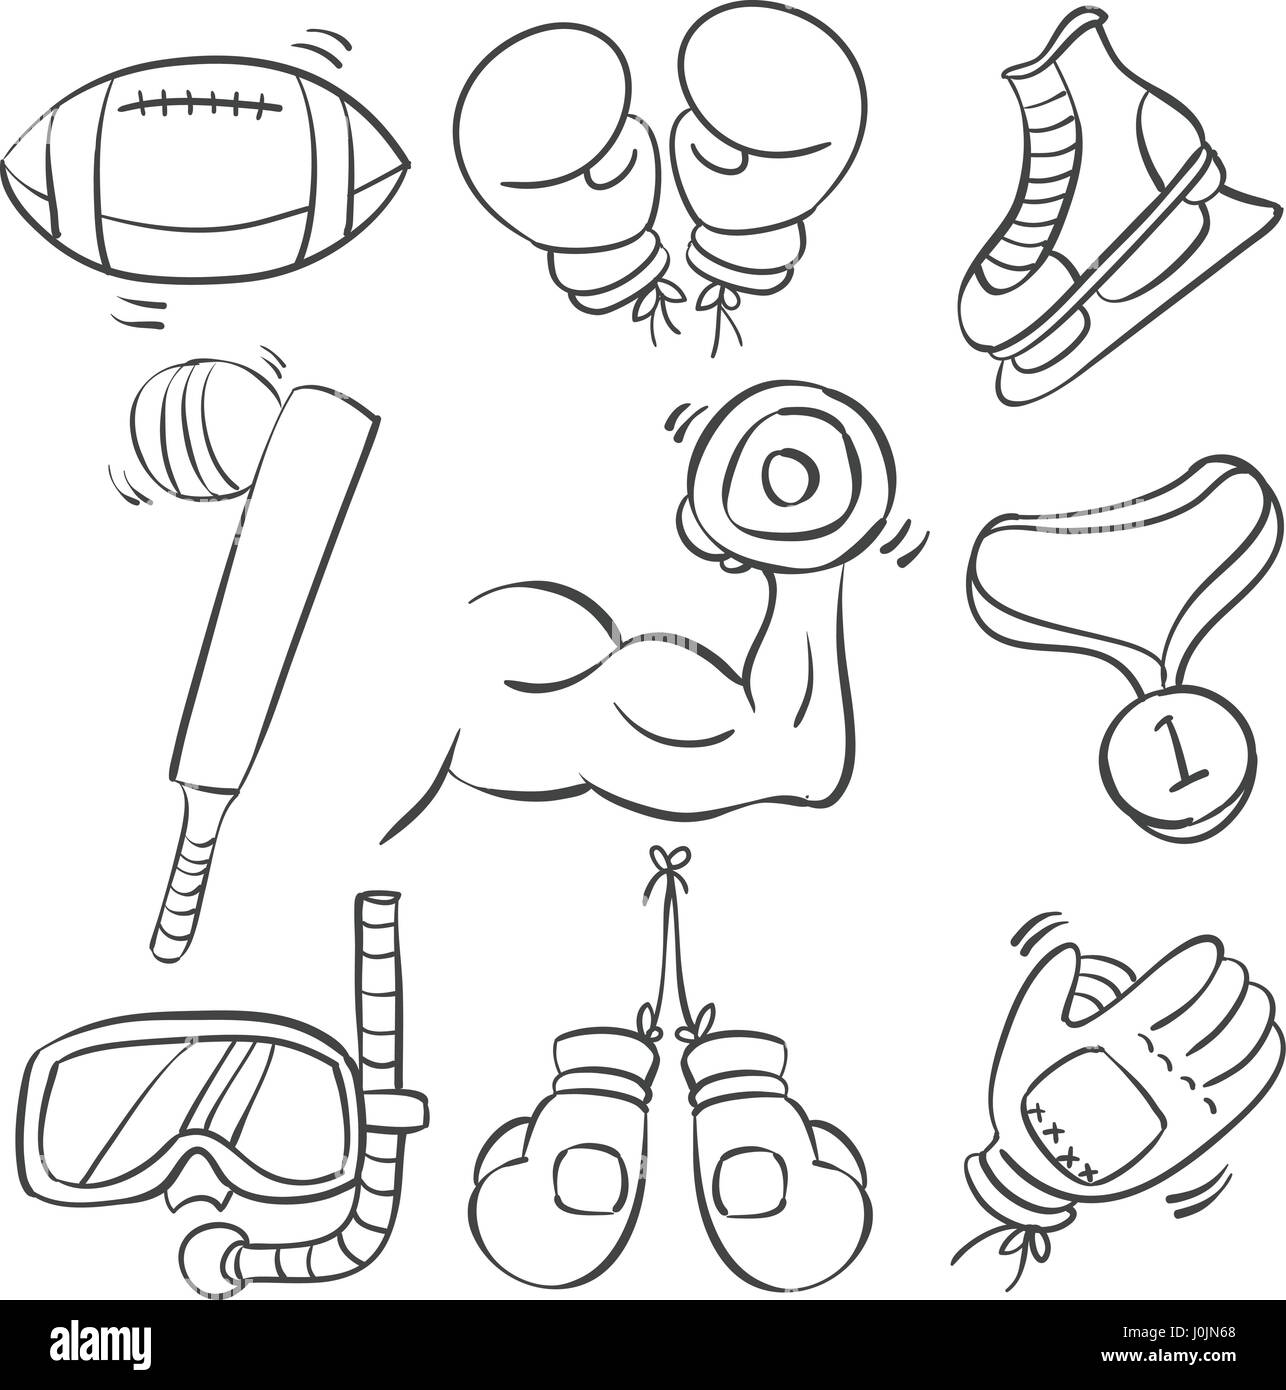 Doodle Sport Ausrüstung Hand zeichnen Vektor-illustration  Stock-Vektorgrafik - Alamy